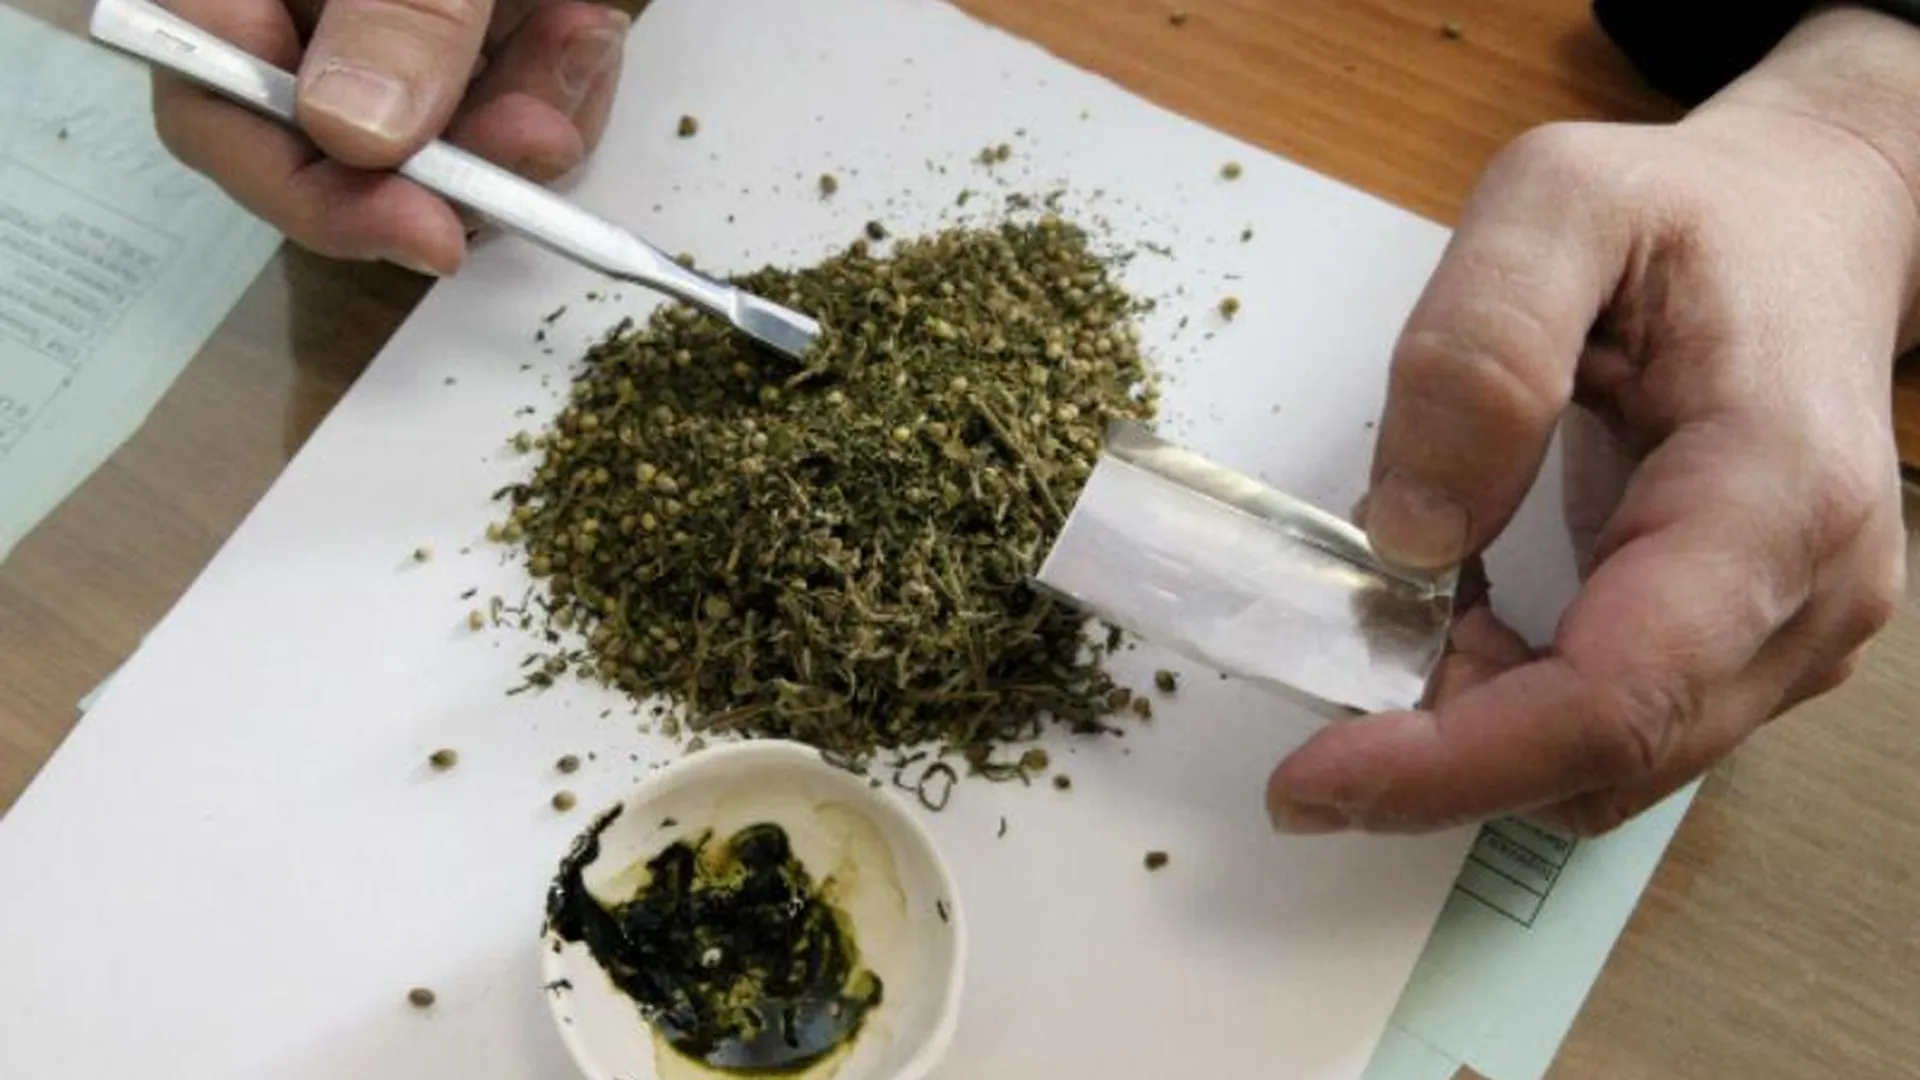 Амфетамин и марихуану нашли в машине нарушителя ПДД в Талдоме